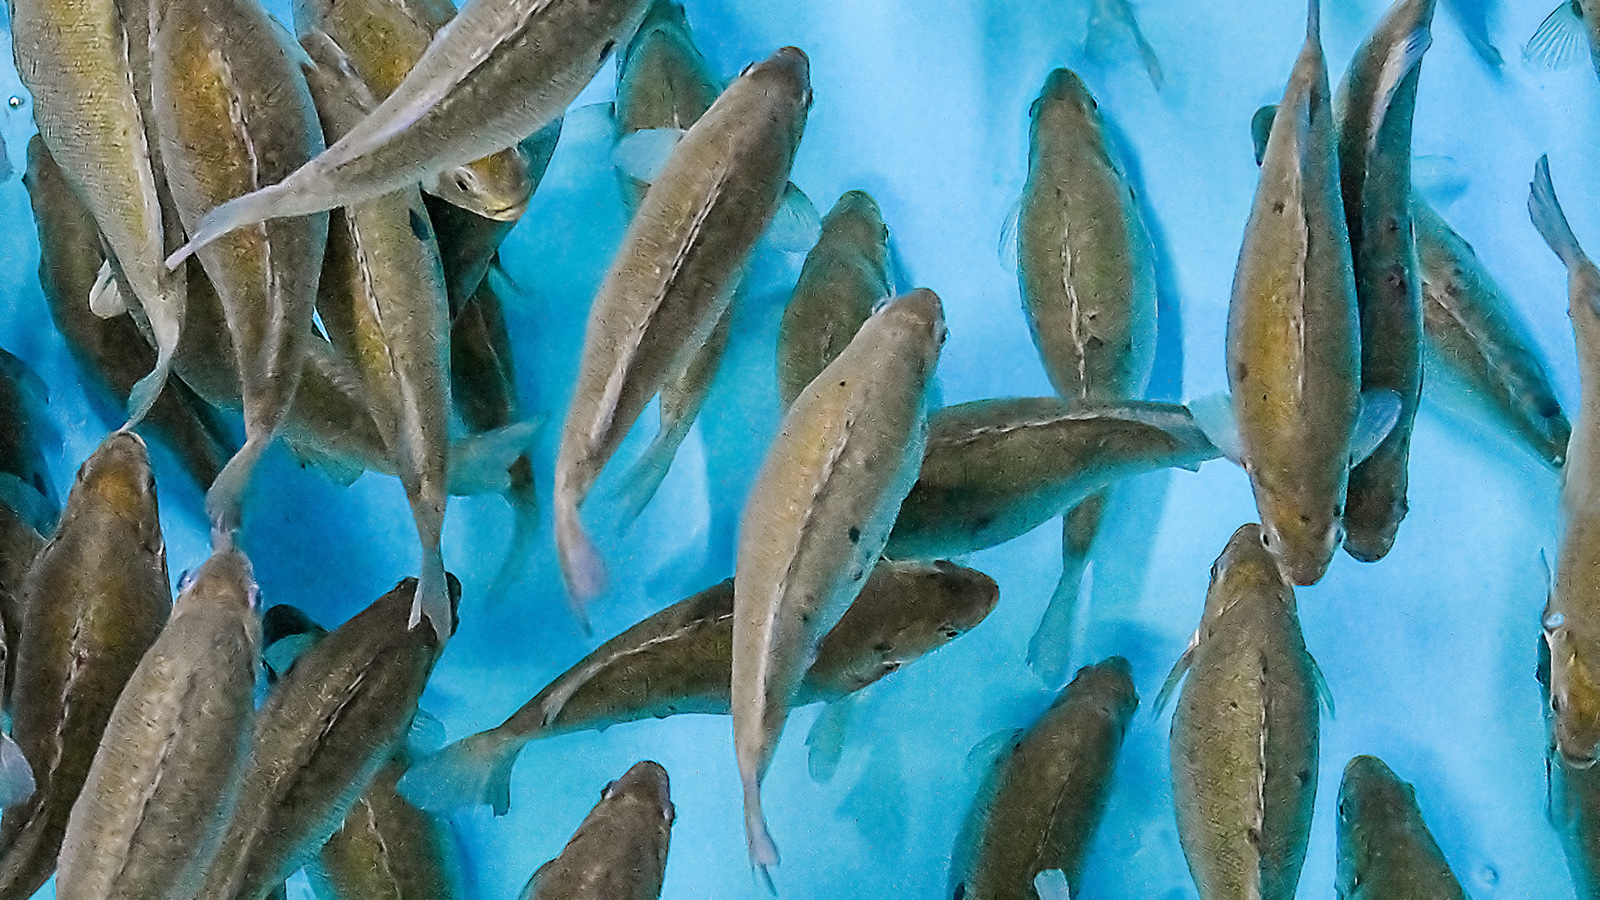 BOAT - The local farm that nurtures fish indoors. | SFA